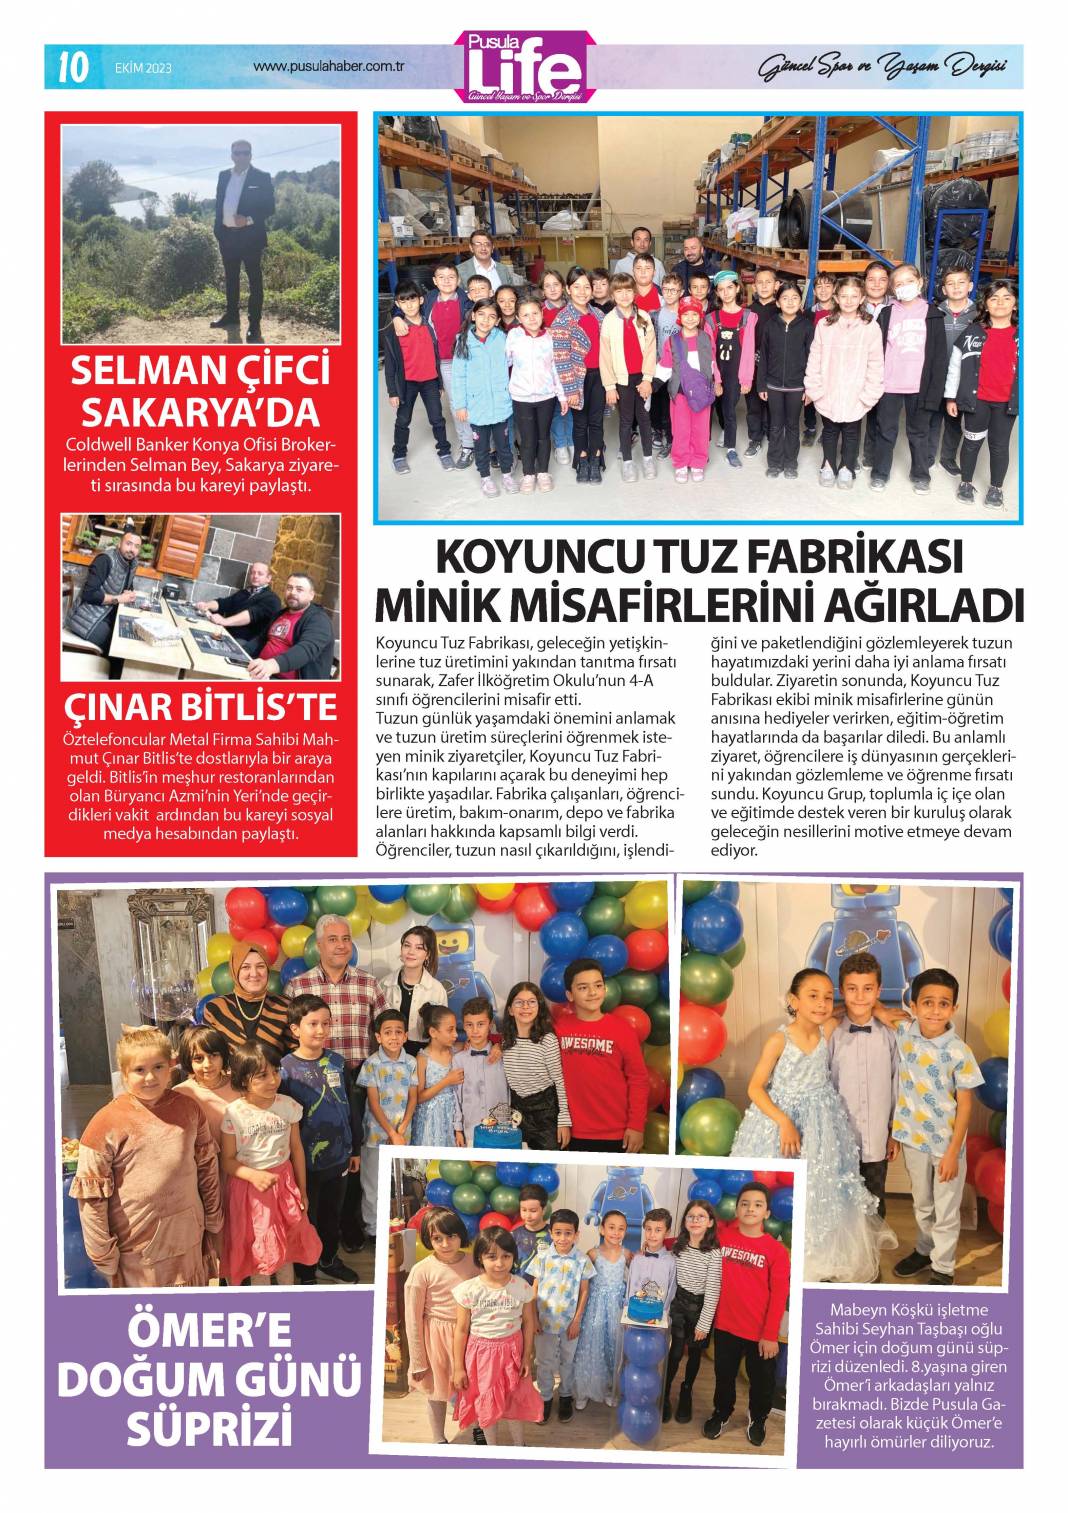 Konya'nın magazin dergisi PS Life'nin 320. sayısı yayınlandı 10